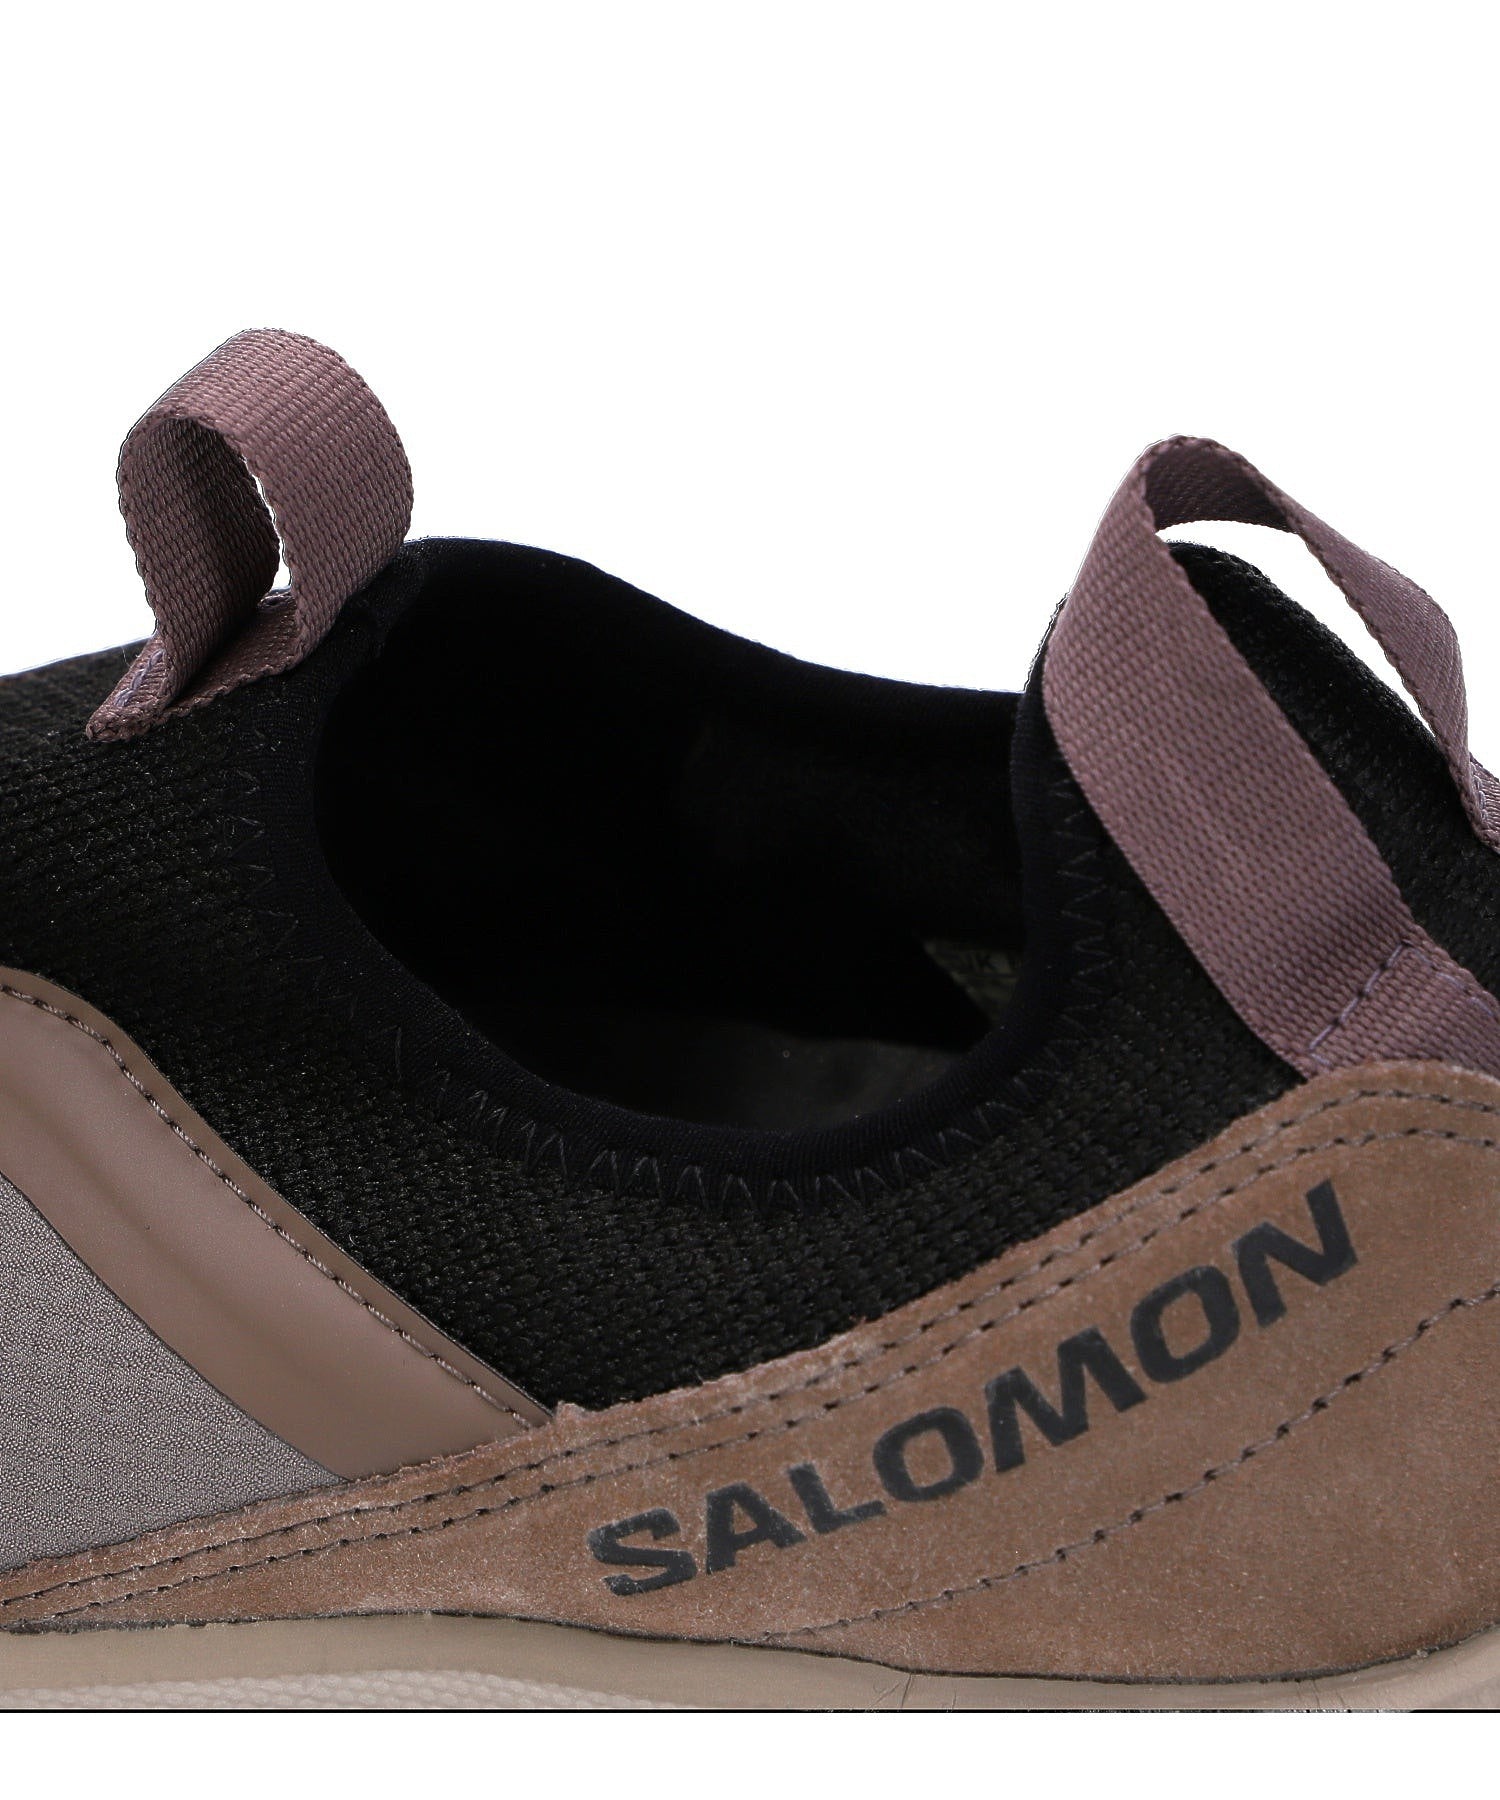 SALOMON/サロモン/RX SNUG/L47282500